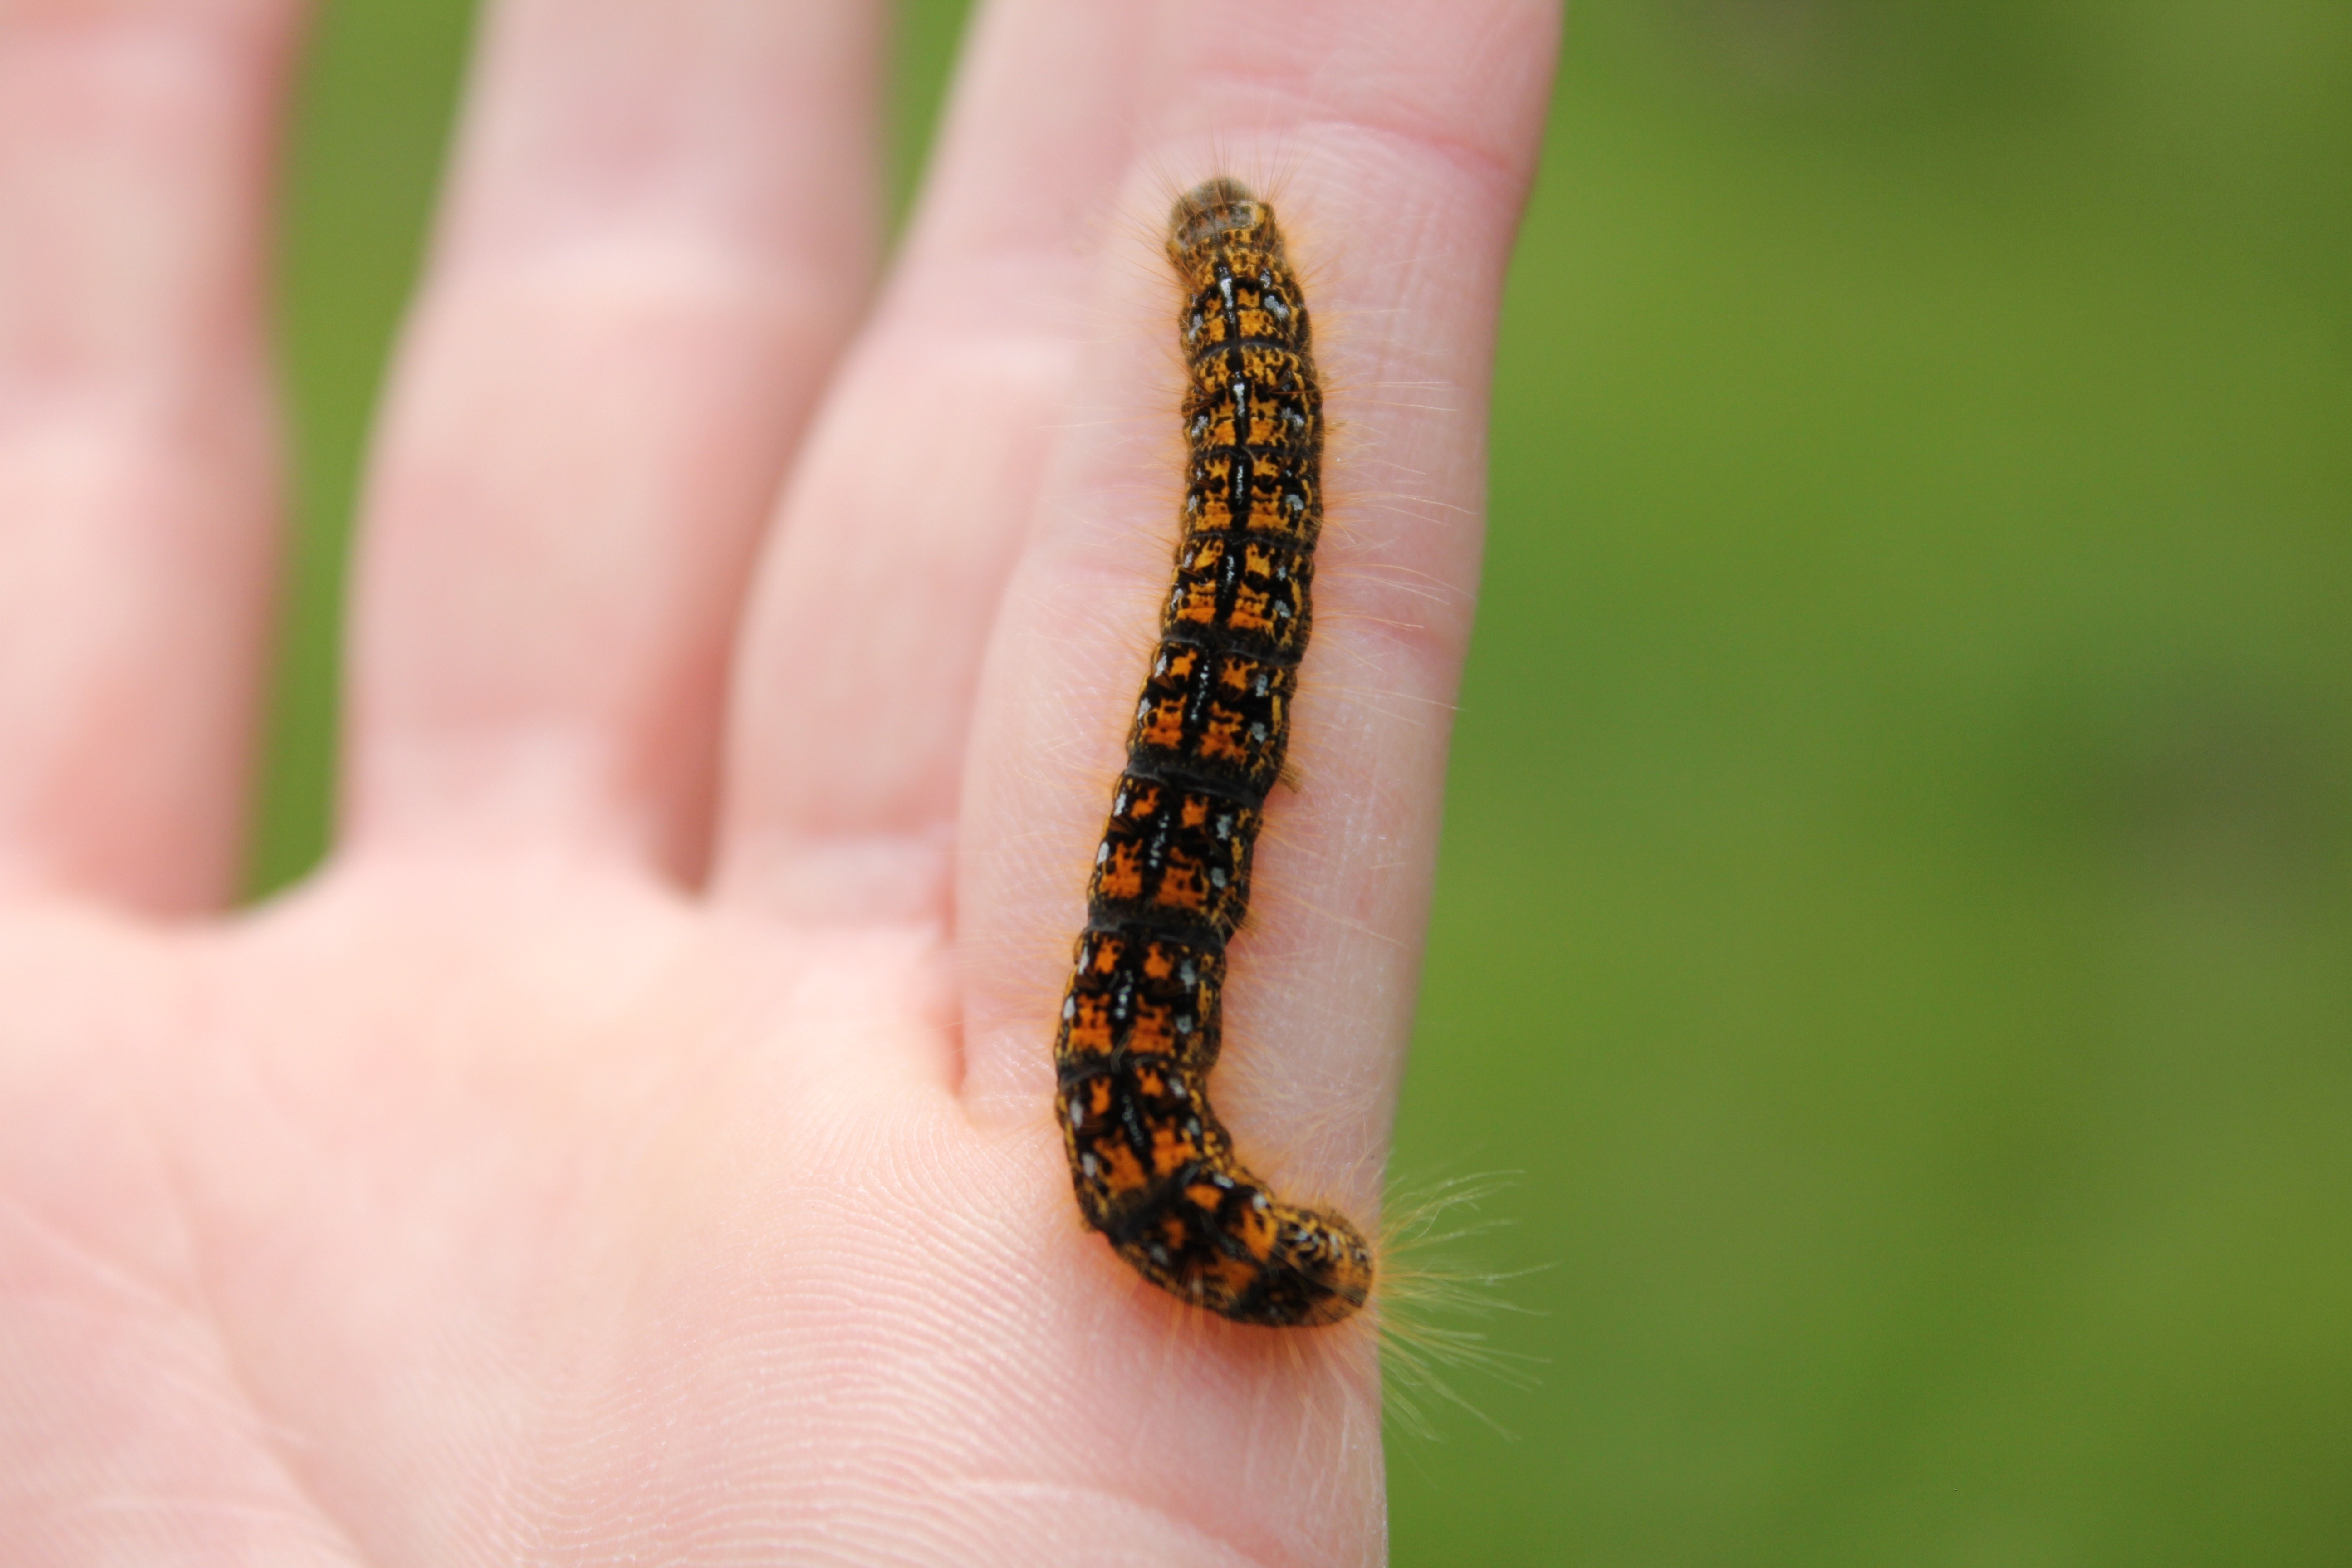 black and orange caterpillar on human finger during daytime